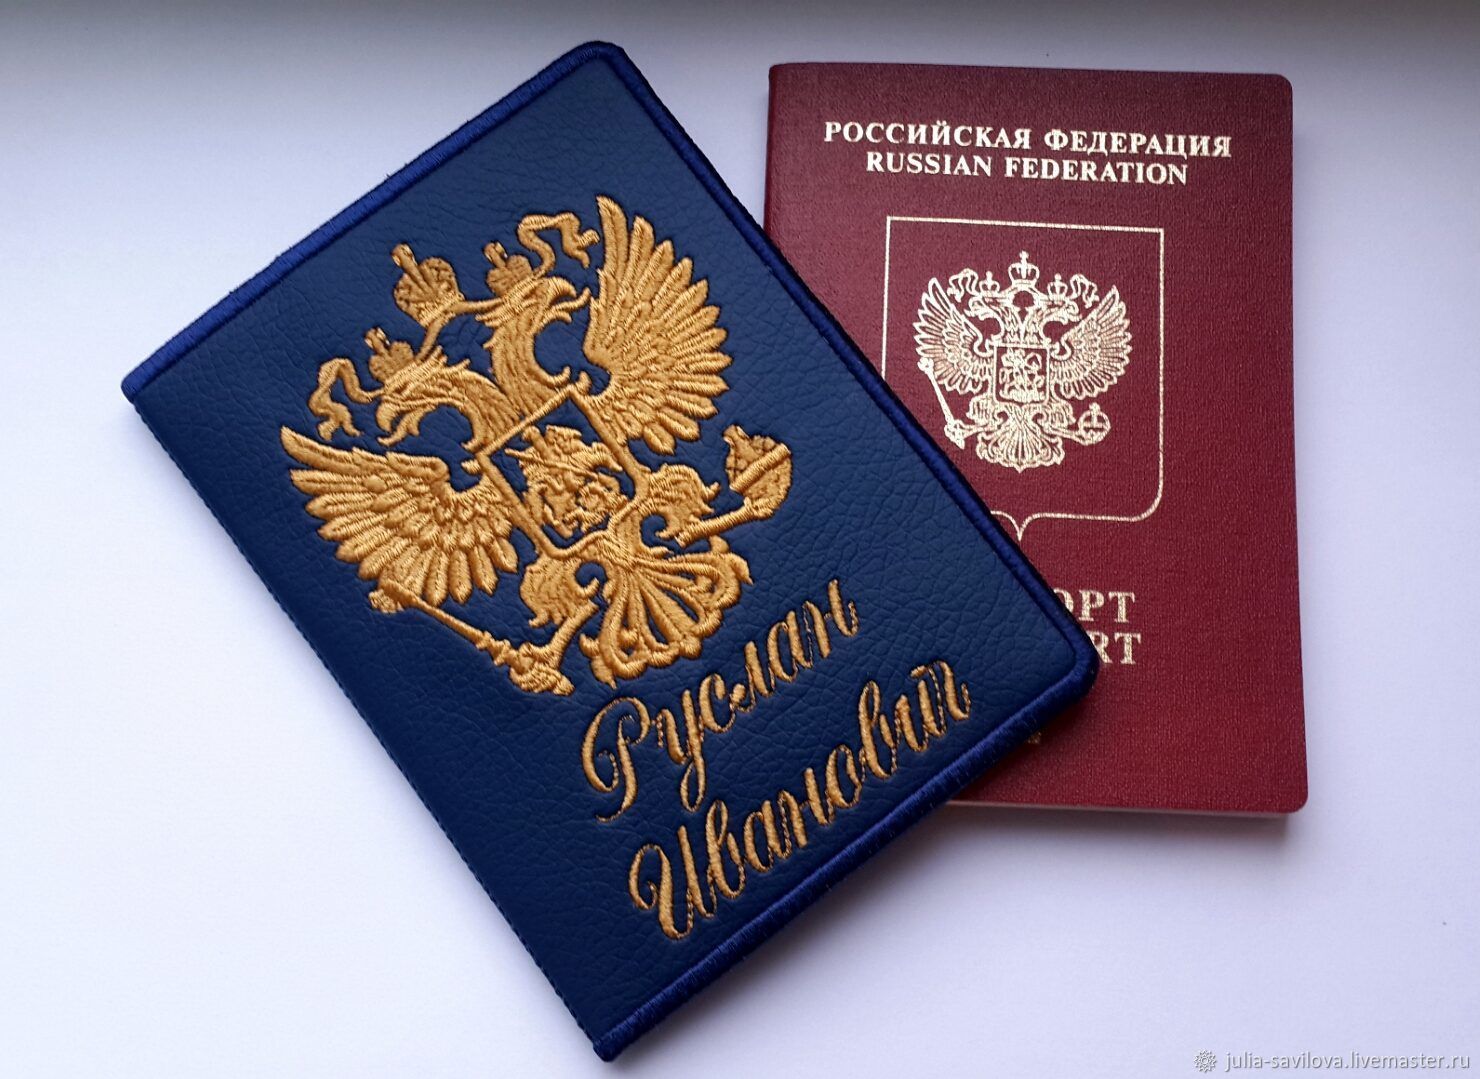 Фото на паспорт ростов на дону ленина